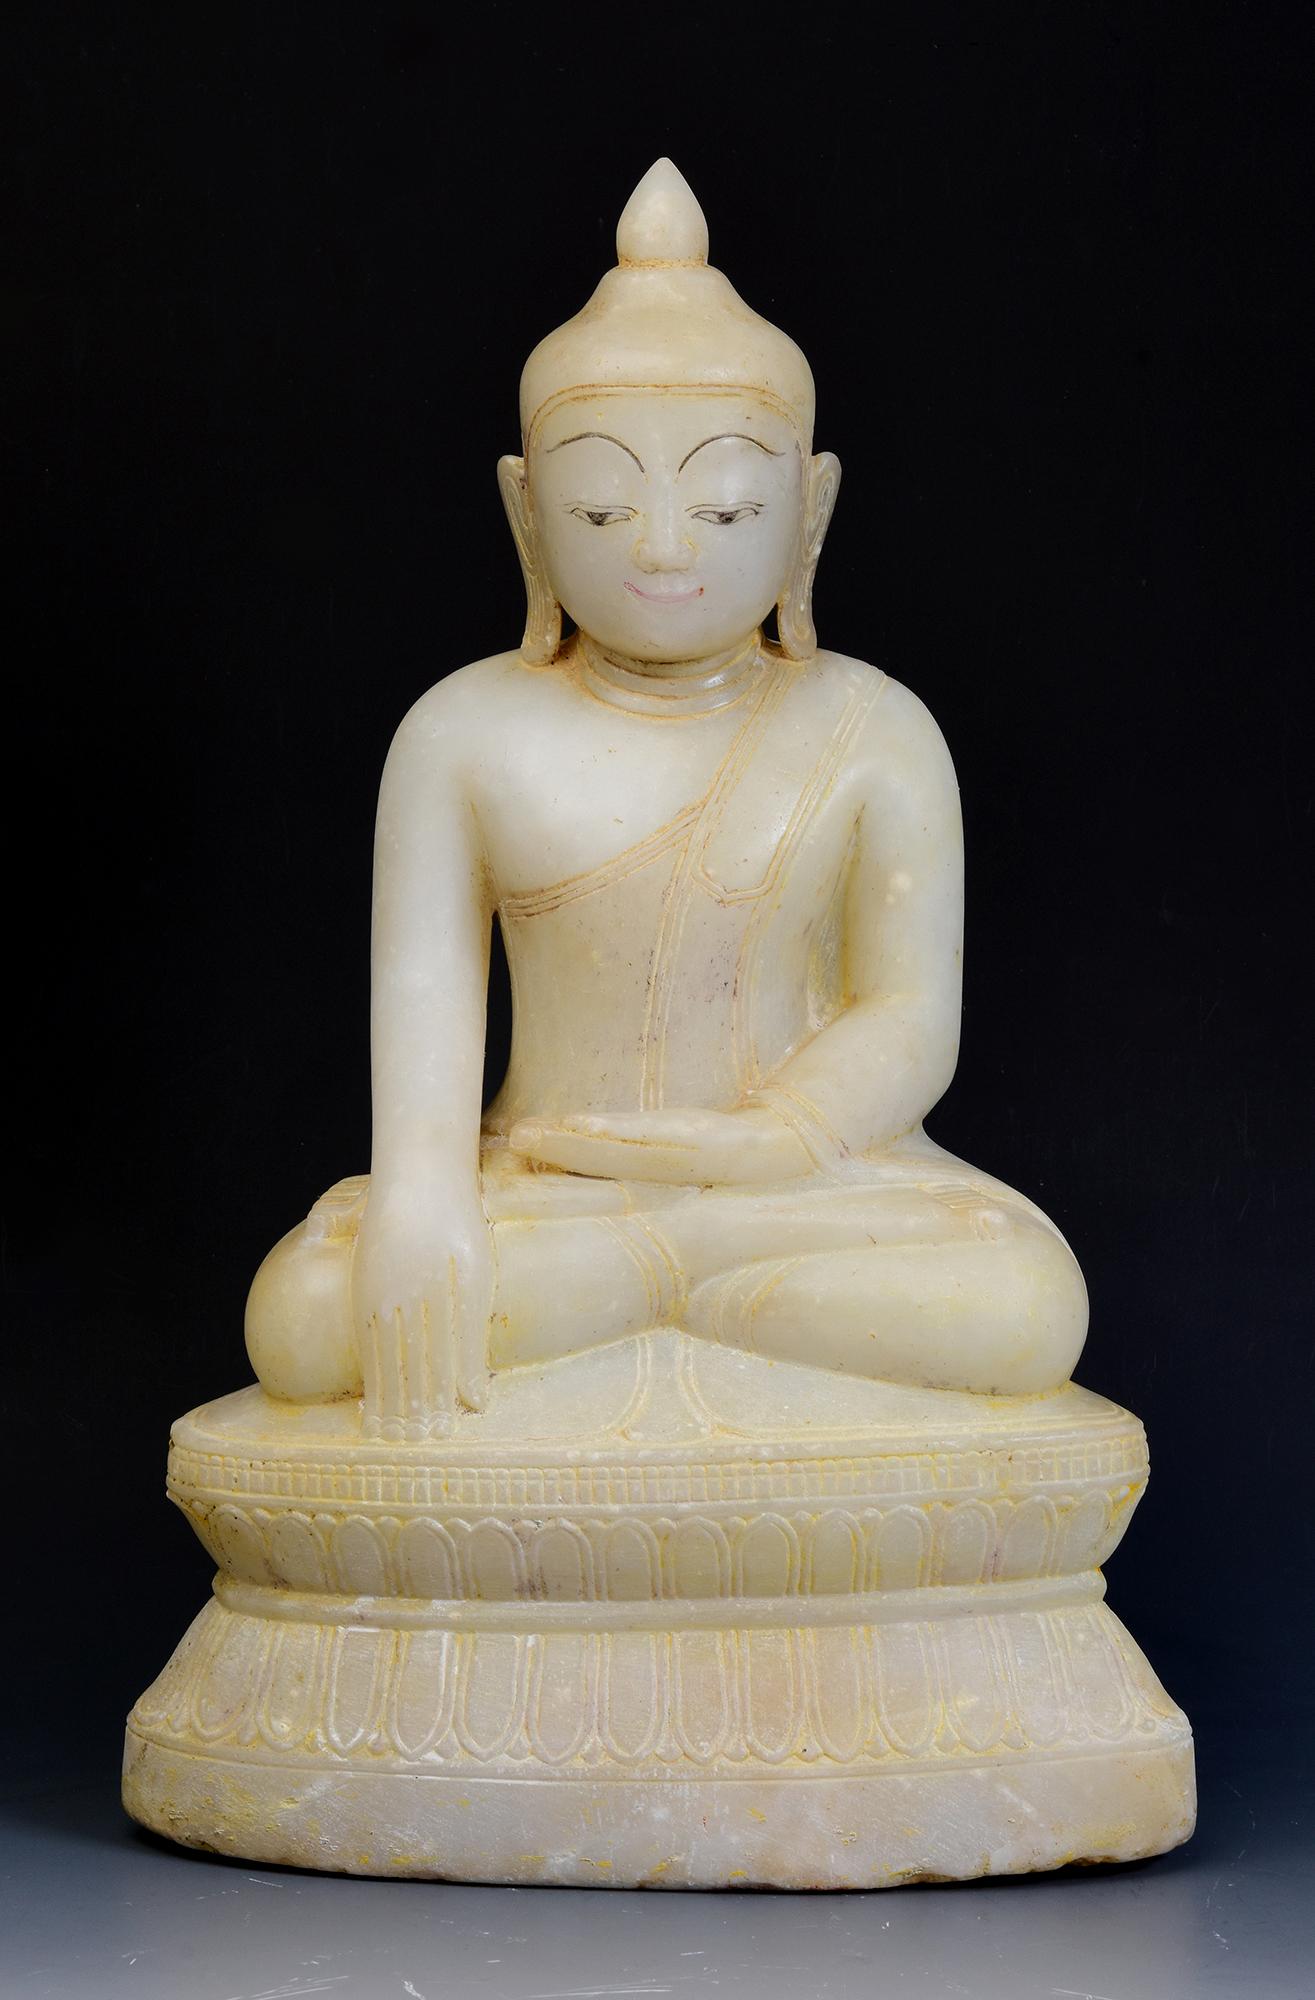 Antiker burmesischer Alabaster-Buddha in Mara-Vijaya-Haltung (die Erde zum Zeugen rufen) auf einem Sockel.

Alter: Birma, Shan-Periode, 17.-18. Jahrhundert
Größe: Höhe 42,4 C.M. / Breite 26,5 C.M. / Tiefe 16 C.M.
Zustand: Insgesamt guter Zustand